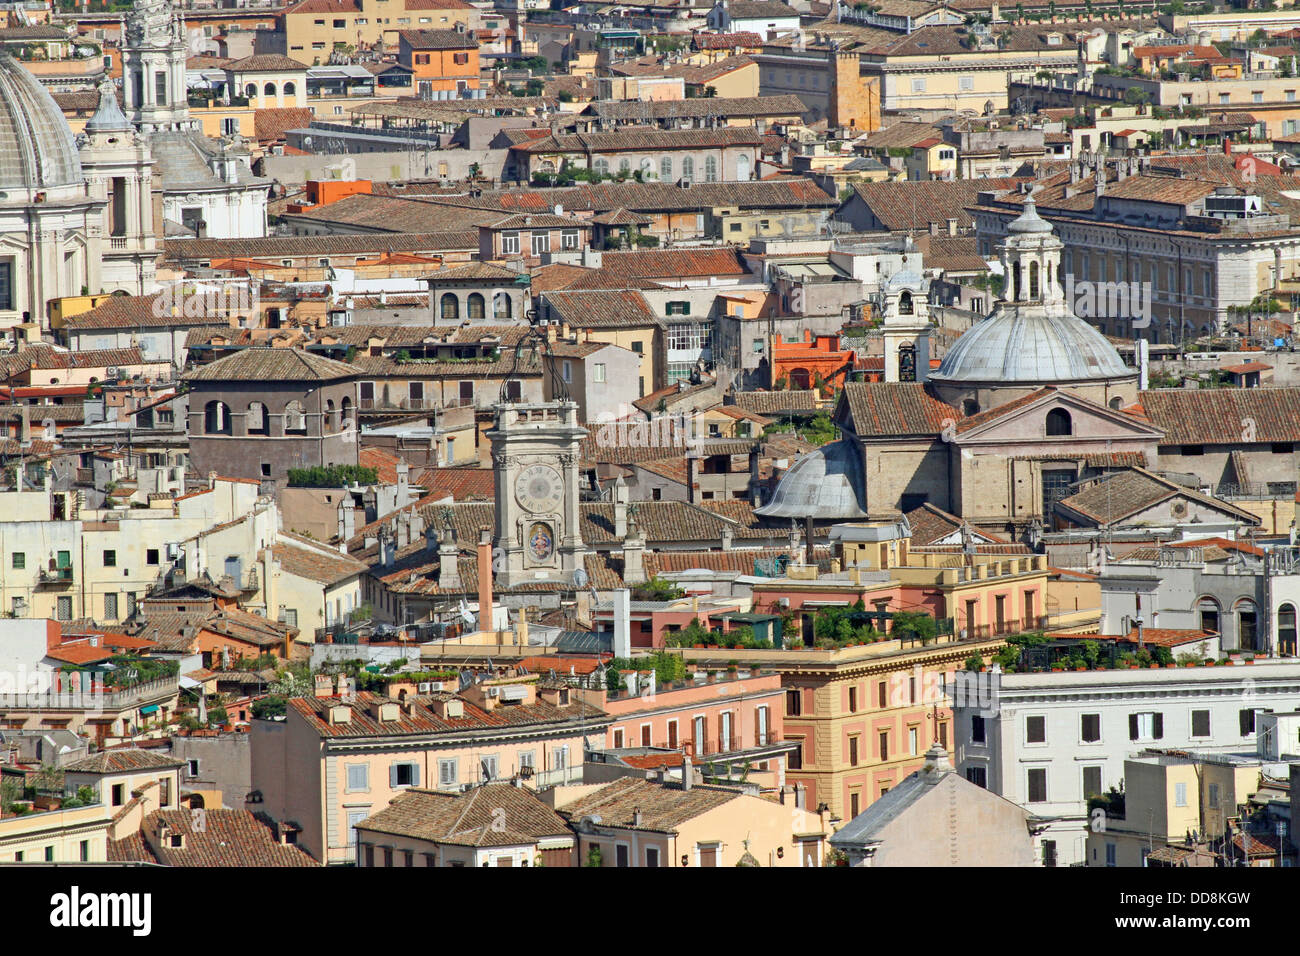 Glockentürmen, Kirchen, Paläste, Kuppeln, Dächer, Luftaufnahme des Zentrums von Rom in Italien Stockfoto